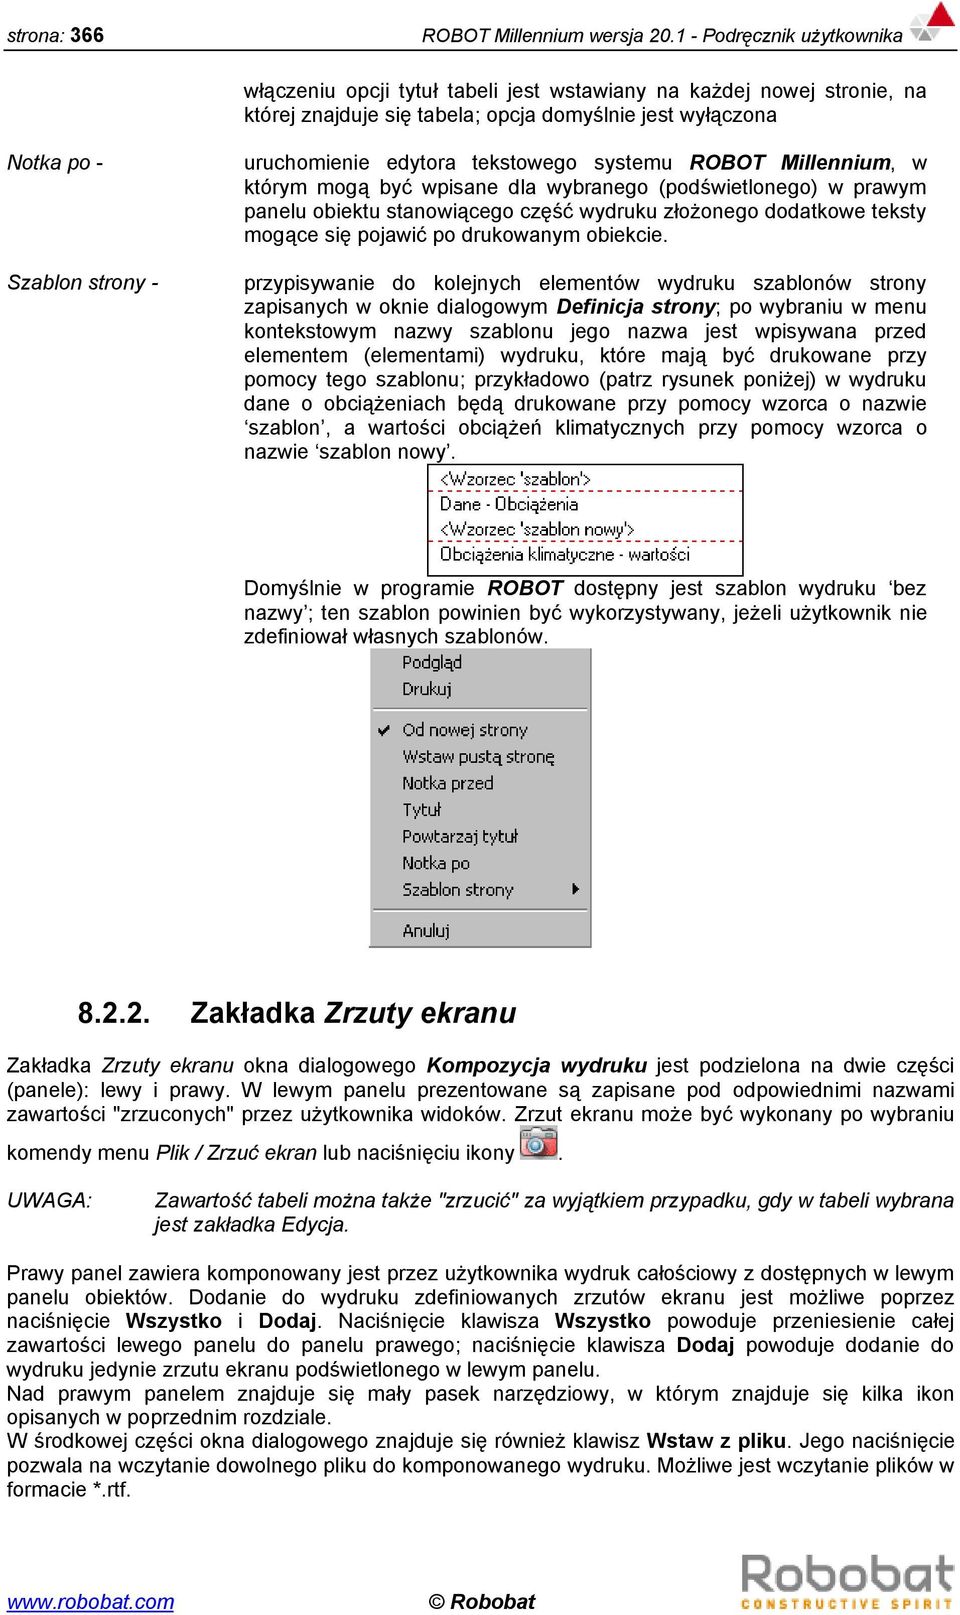 edytora tekstowego systemu ROBOT Millennium, w którym mogą być wpisane dla wybranego (podświetlonego) w prawym panelu obiektu stanowiącego część wydruku złożonego dodatkowe teksty mogące się pojawić